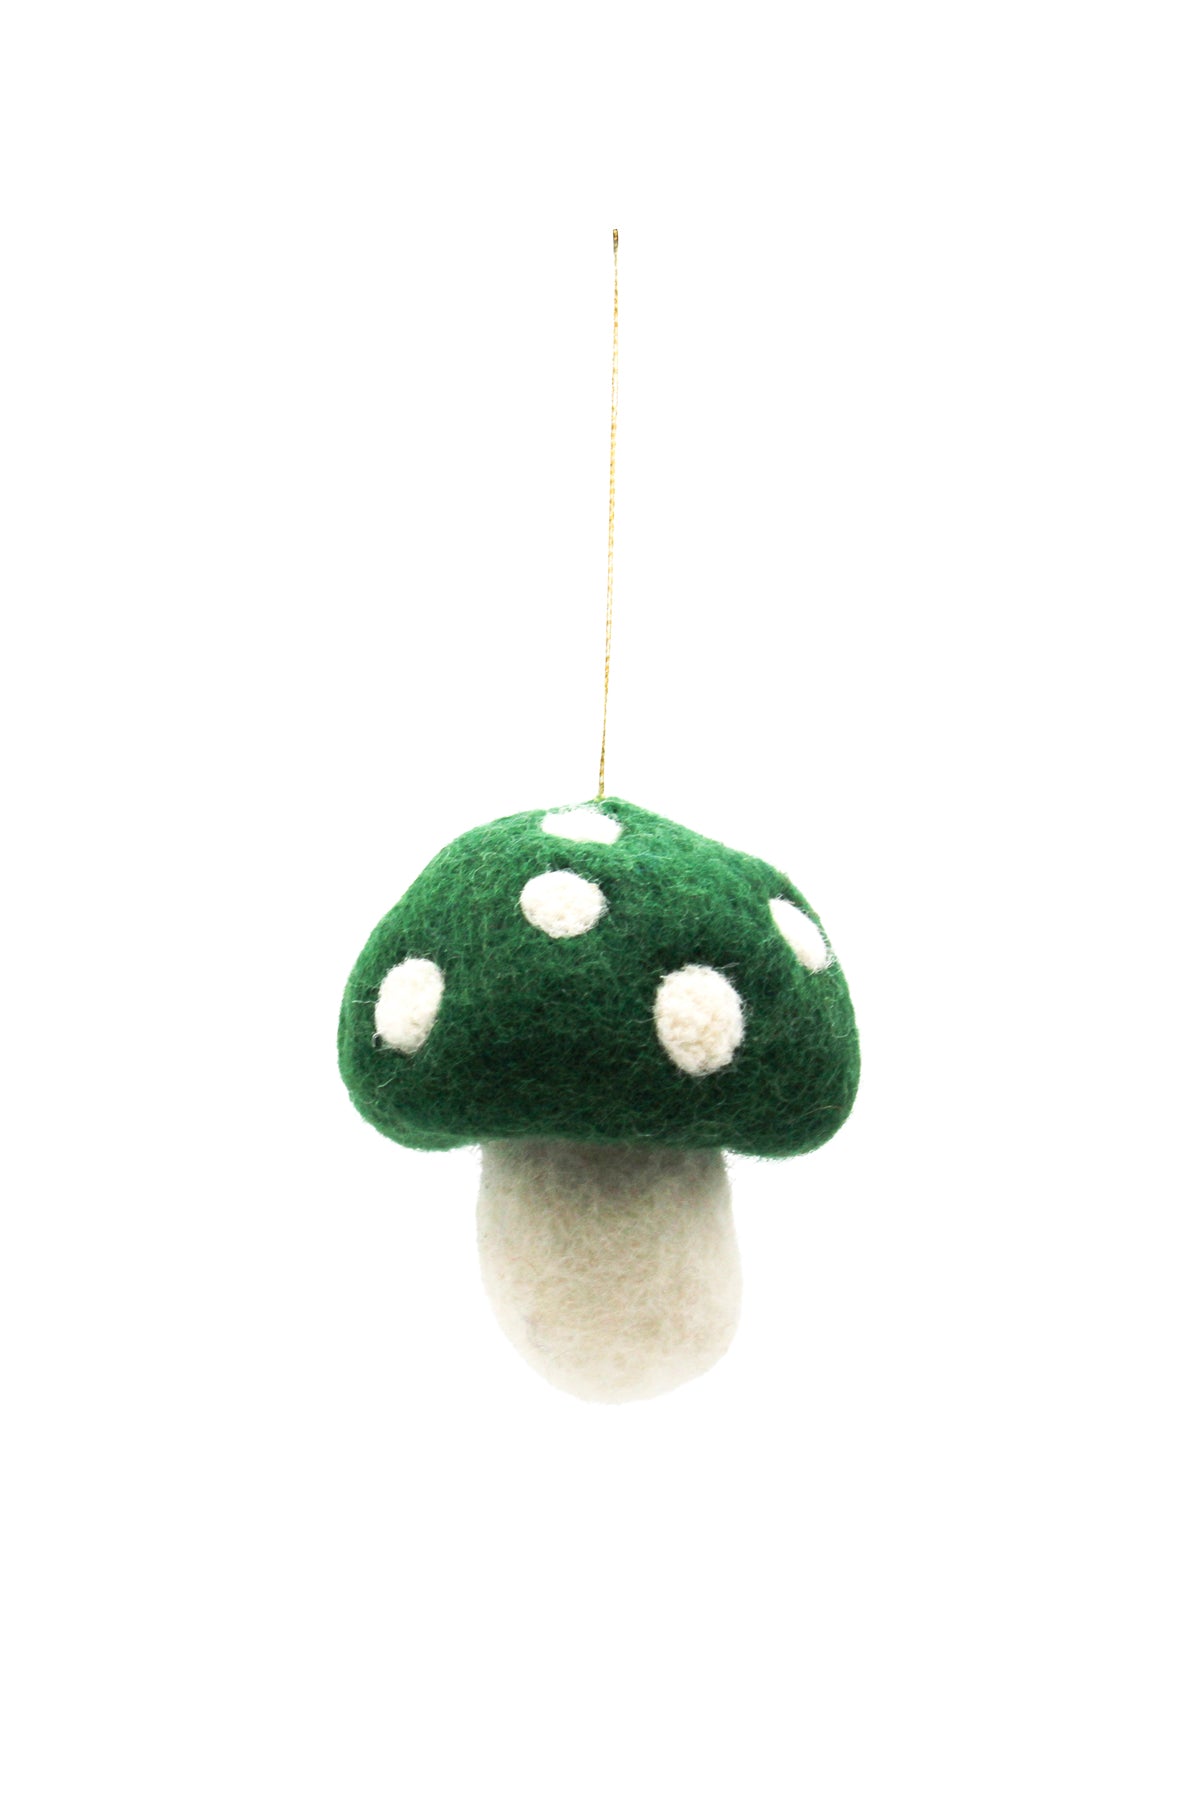 Felt Mushroom Ornament: 12pcs/Pkt